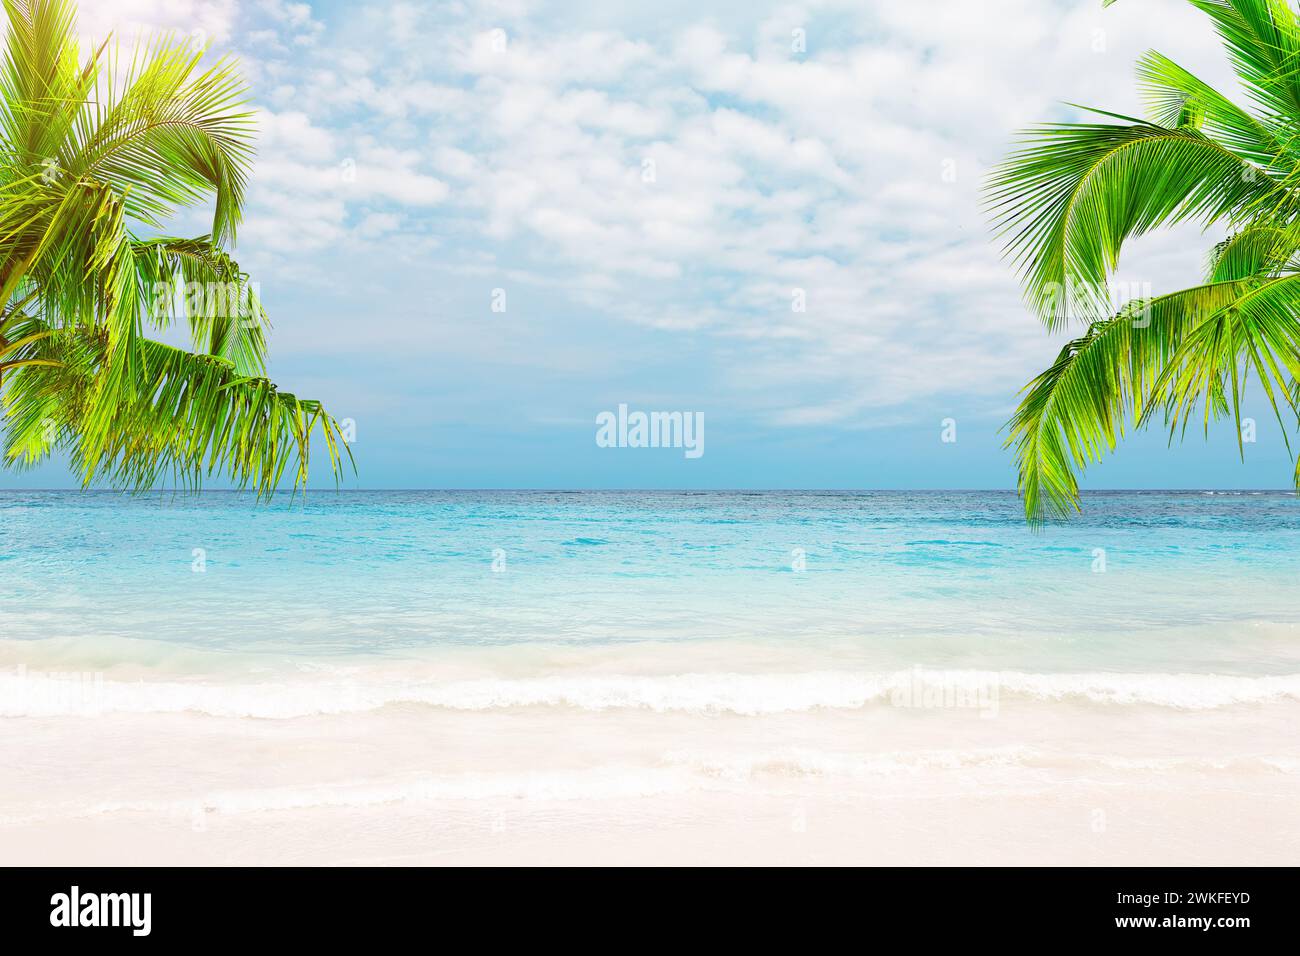 Belle plage de sable blanc avec eau turquoise, cocotiers et ciel bleu avec nuages à Punta Cana, République Dominicaine. Banque D'Images